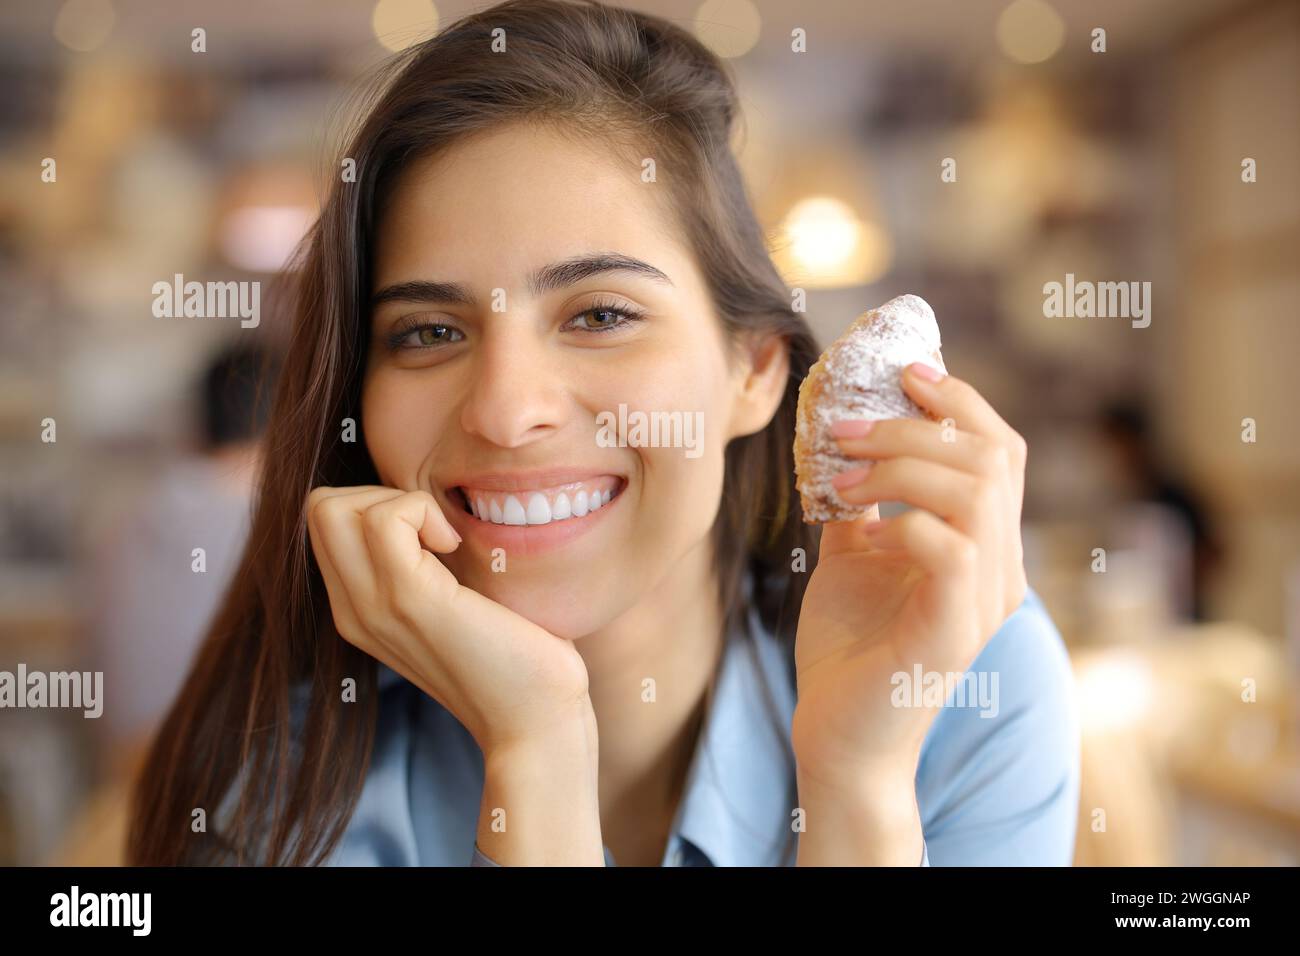 Femme heureuse souriante tenant une collation et regardant la caméra dans un intérieur de bar Banque D'Images